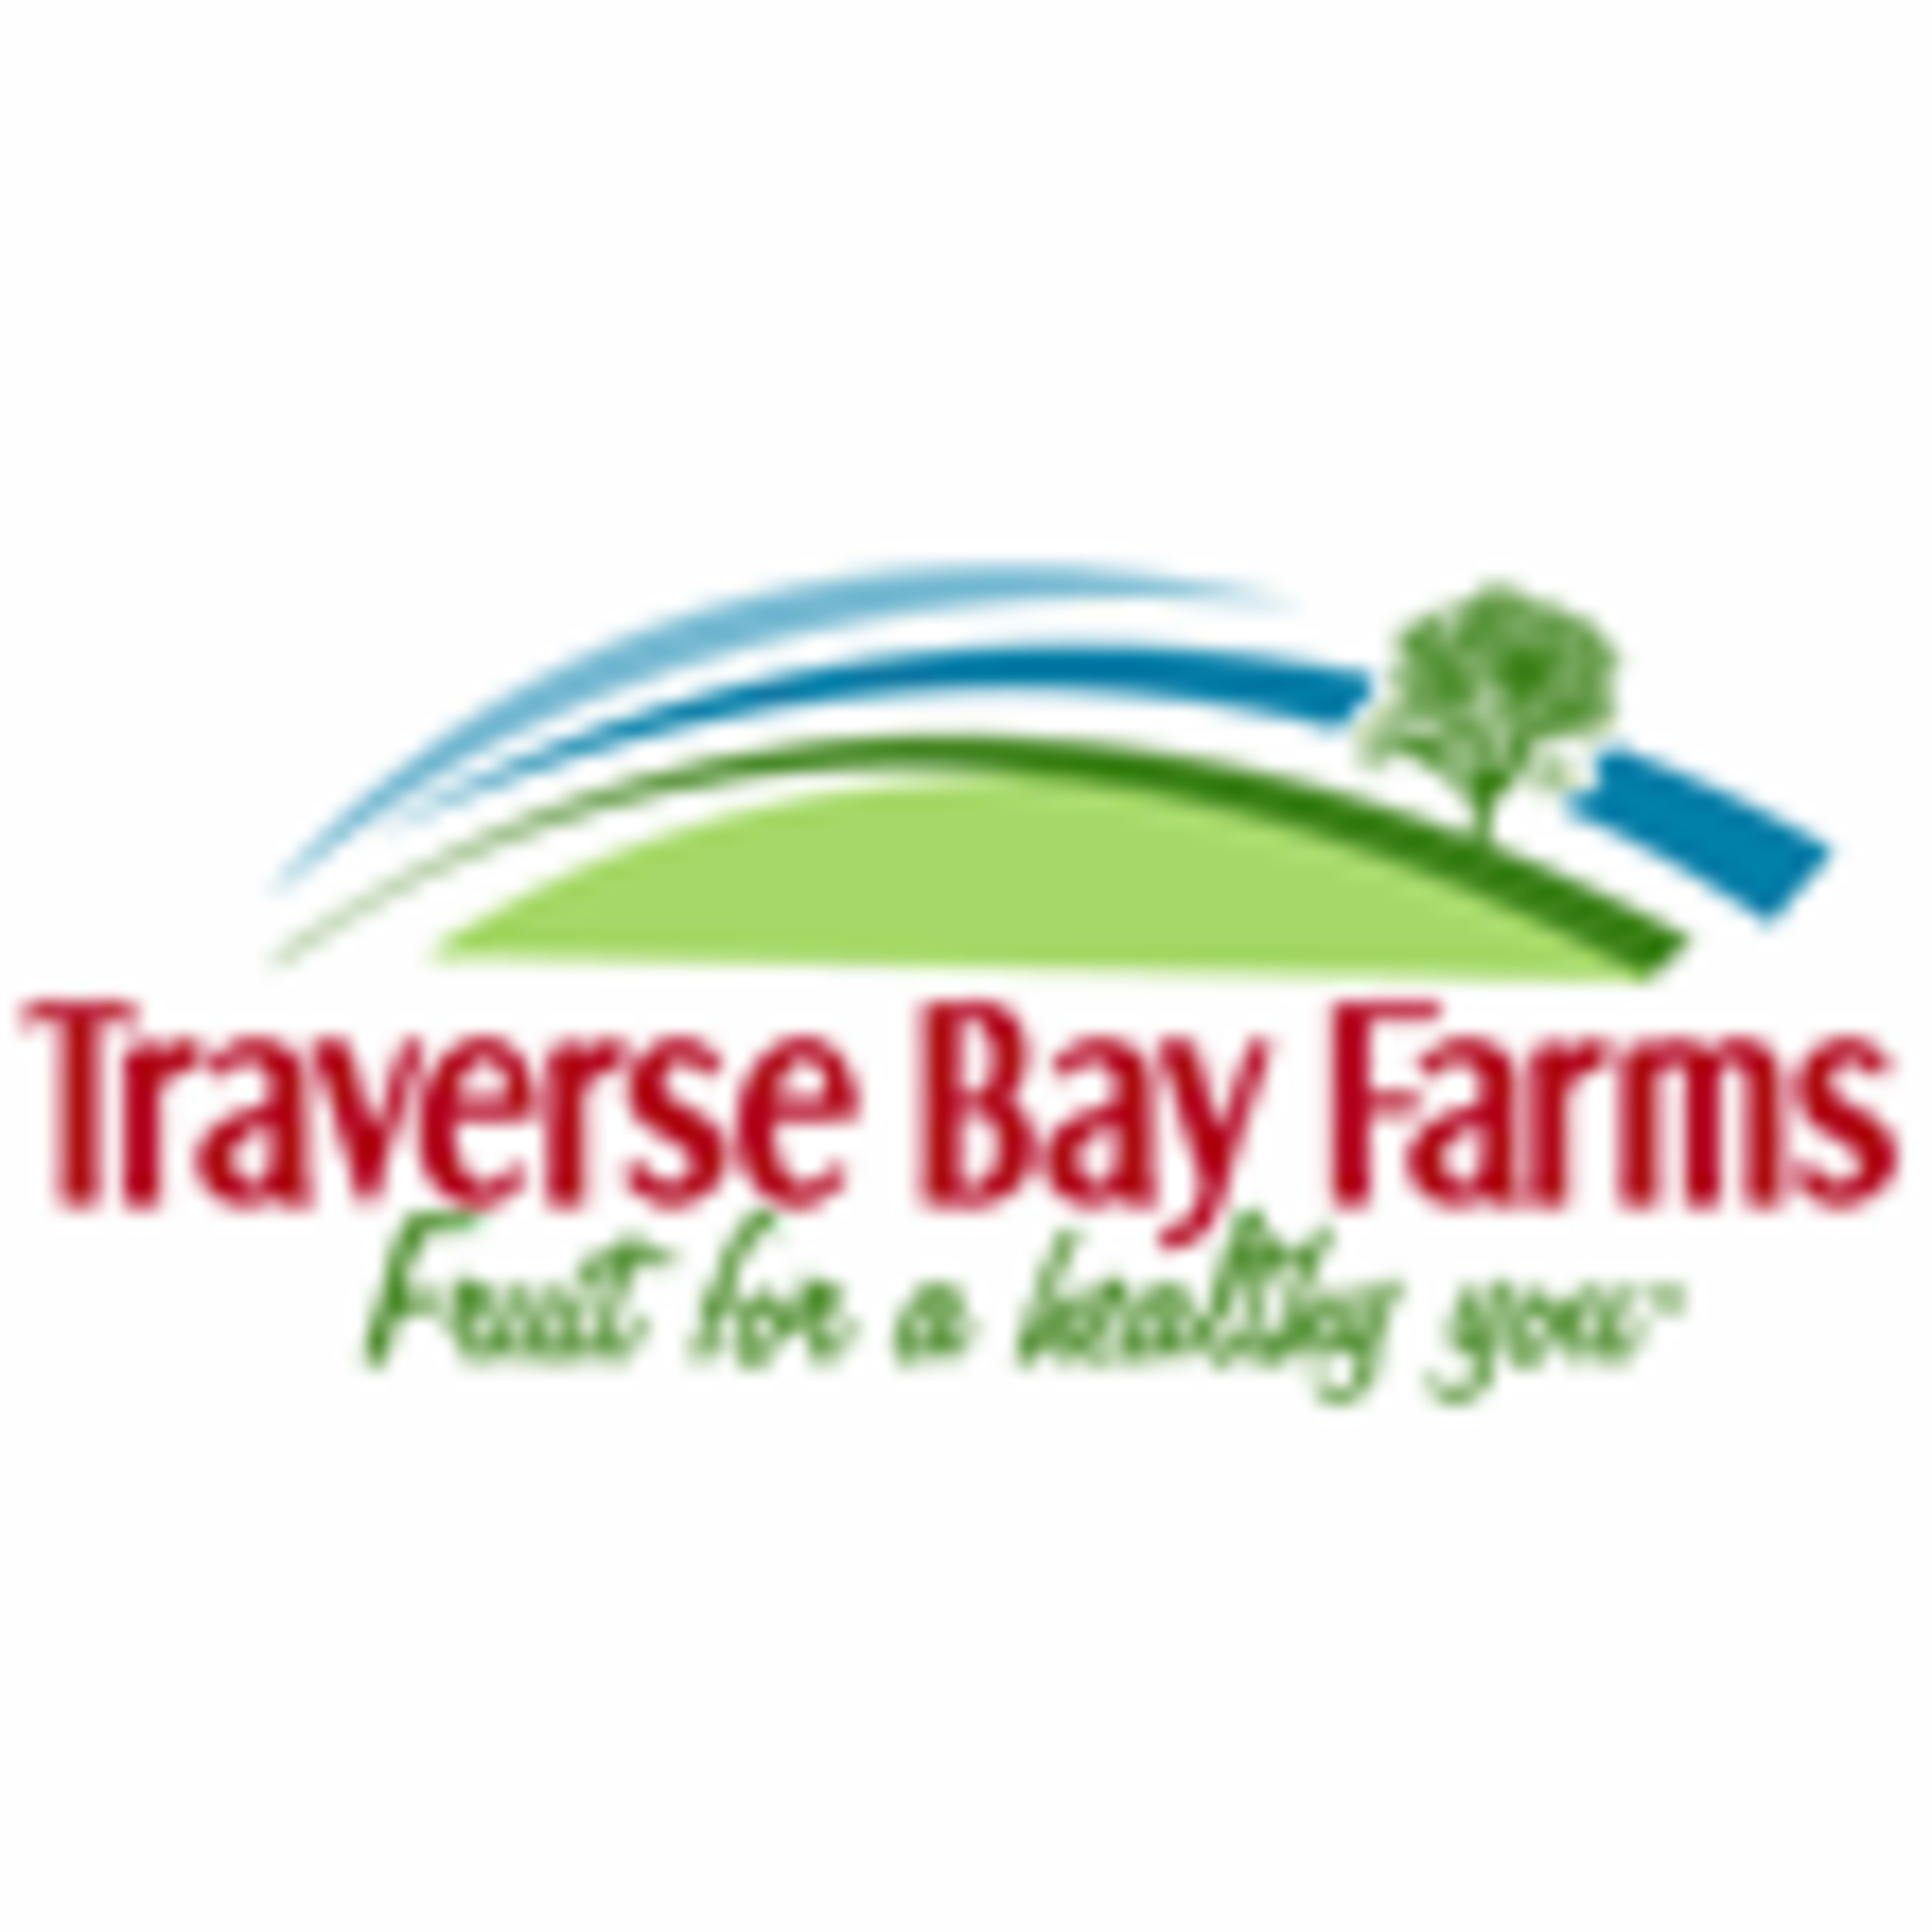 Traverse Bay Farms Code